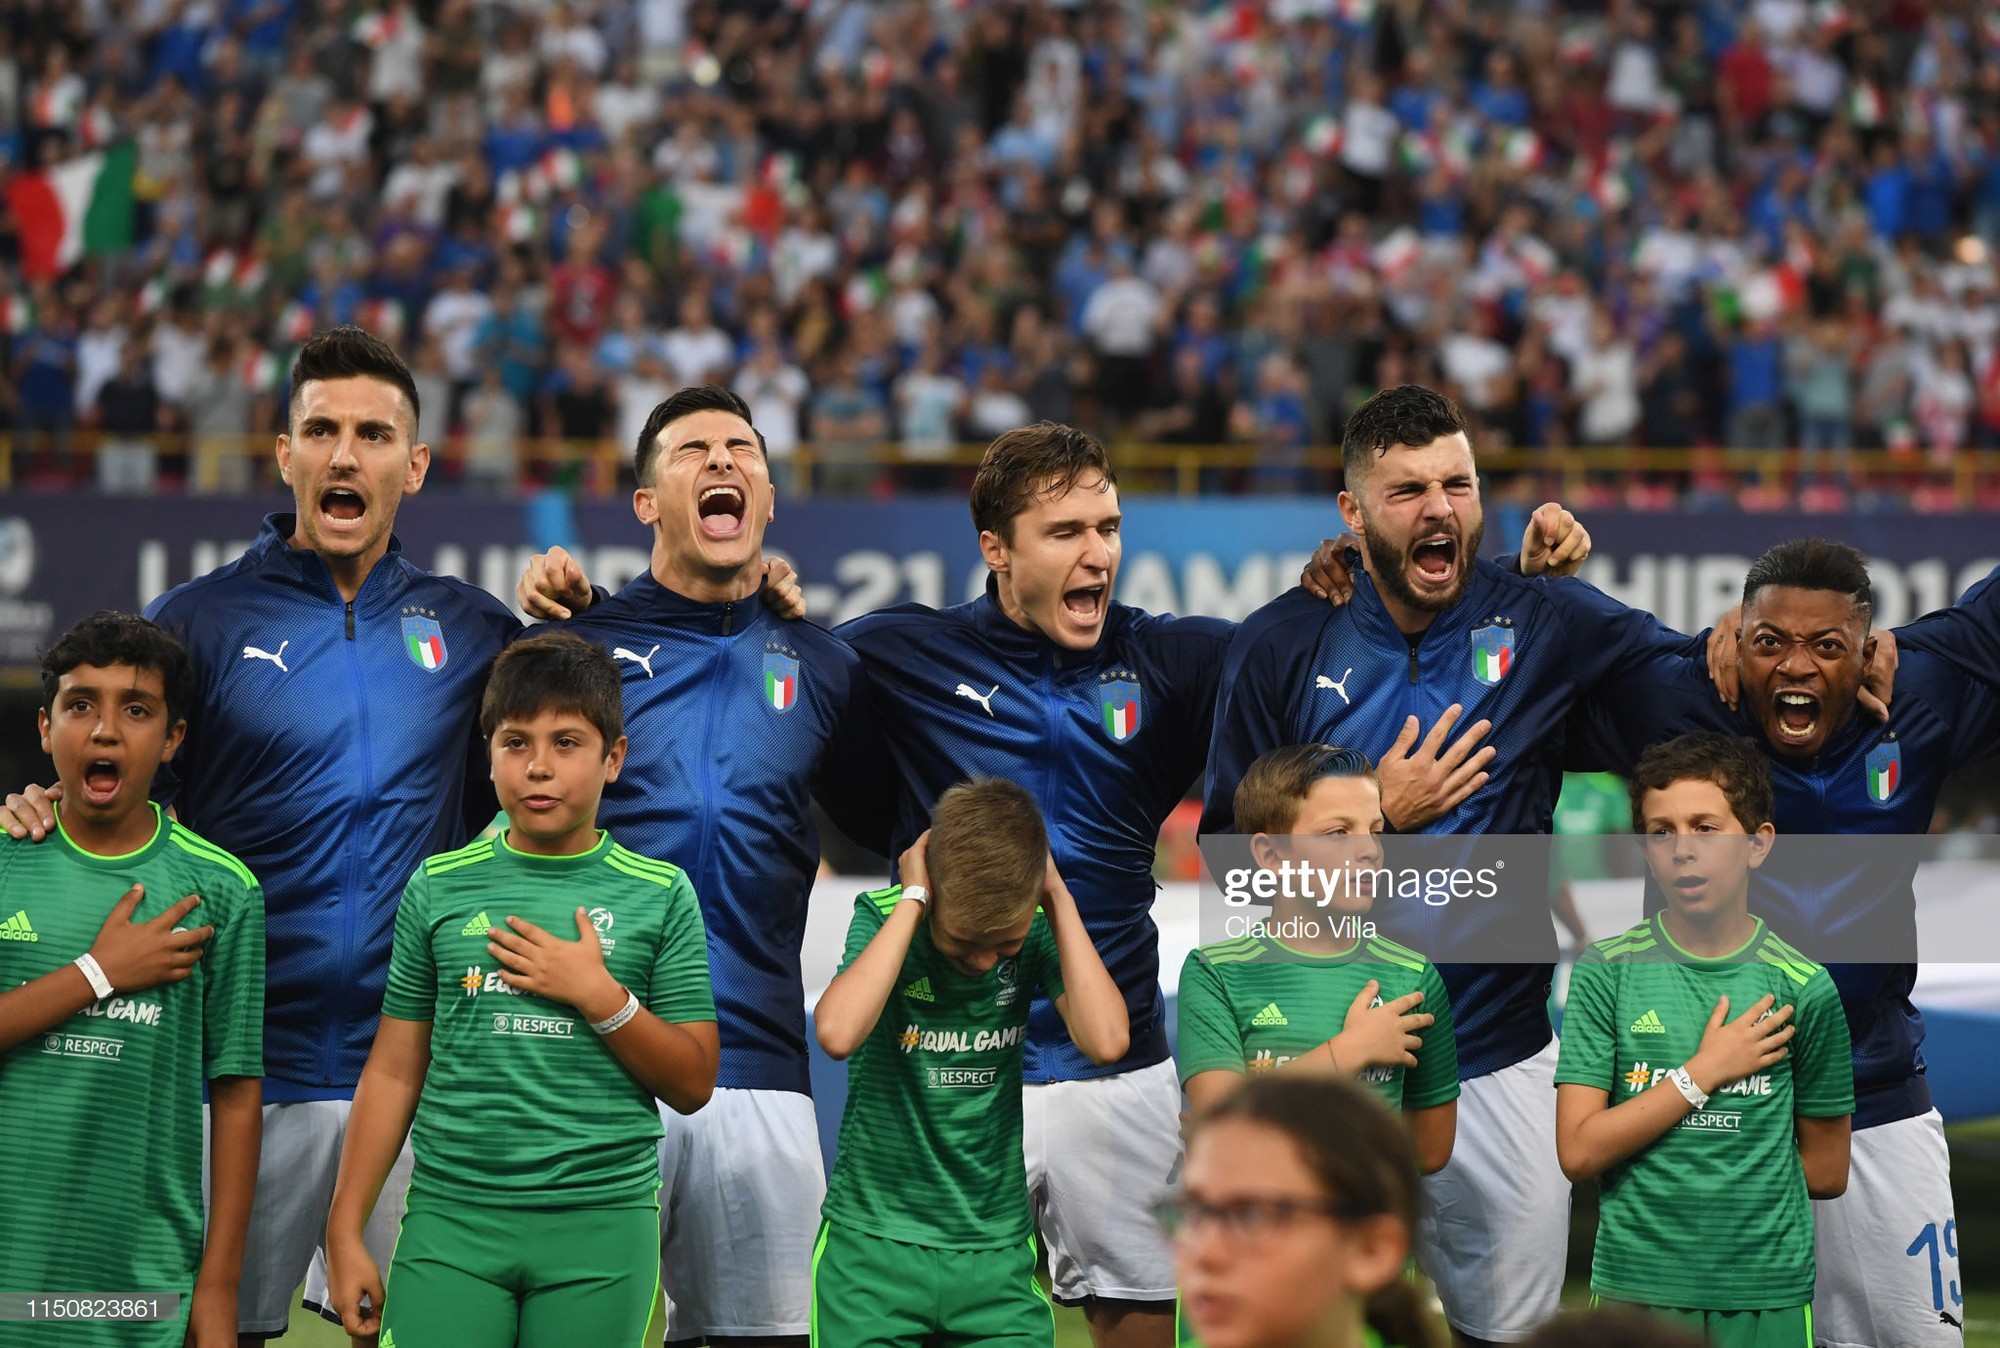 Màn hát quốc ca siêu hoành tráng của dàn cầu thủ đẹp trai Italy khiến các cậu bé mascot bịt tai sợ hãi - Ảnh 2.